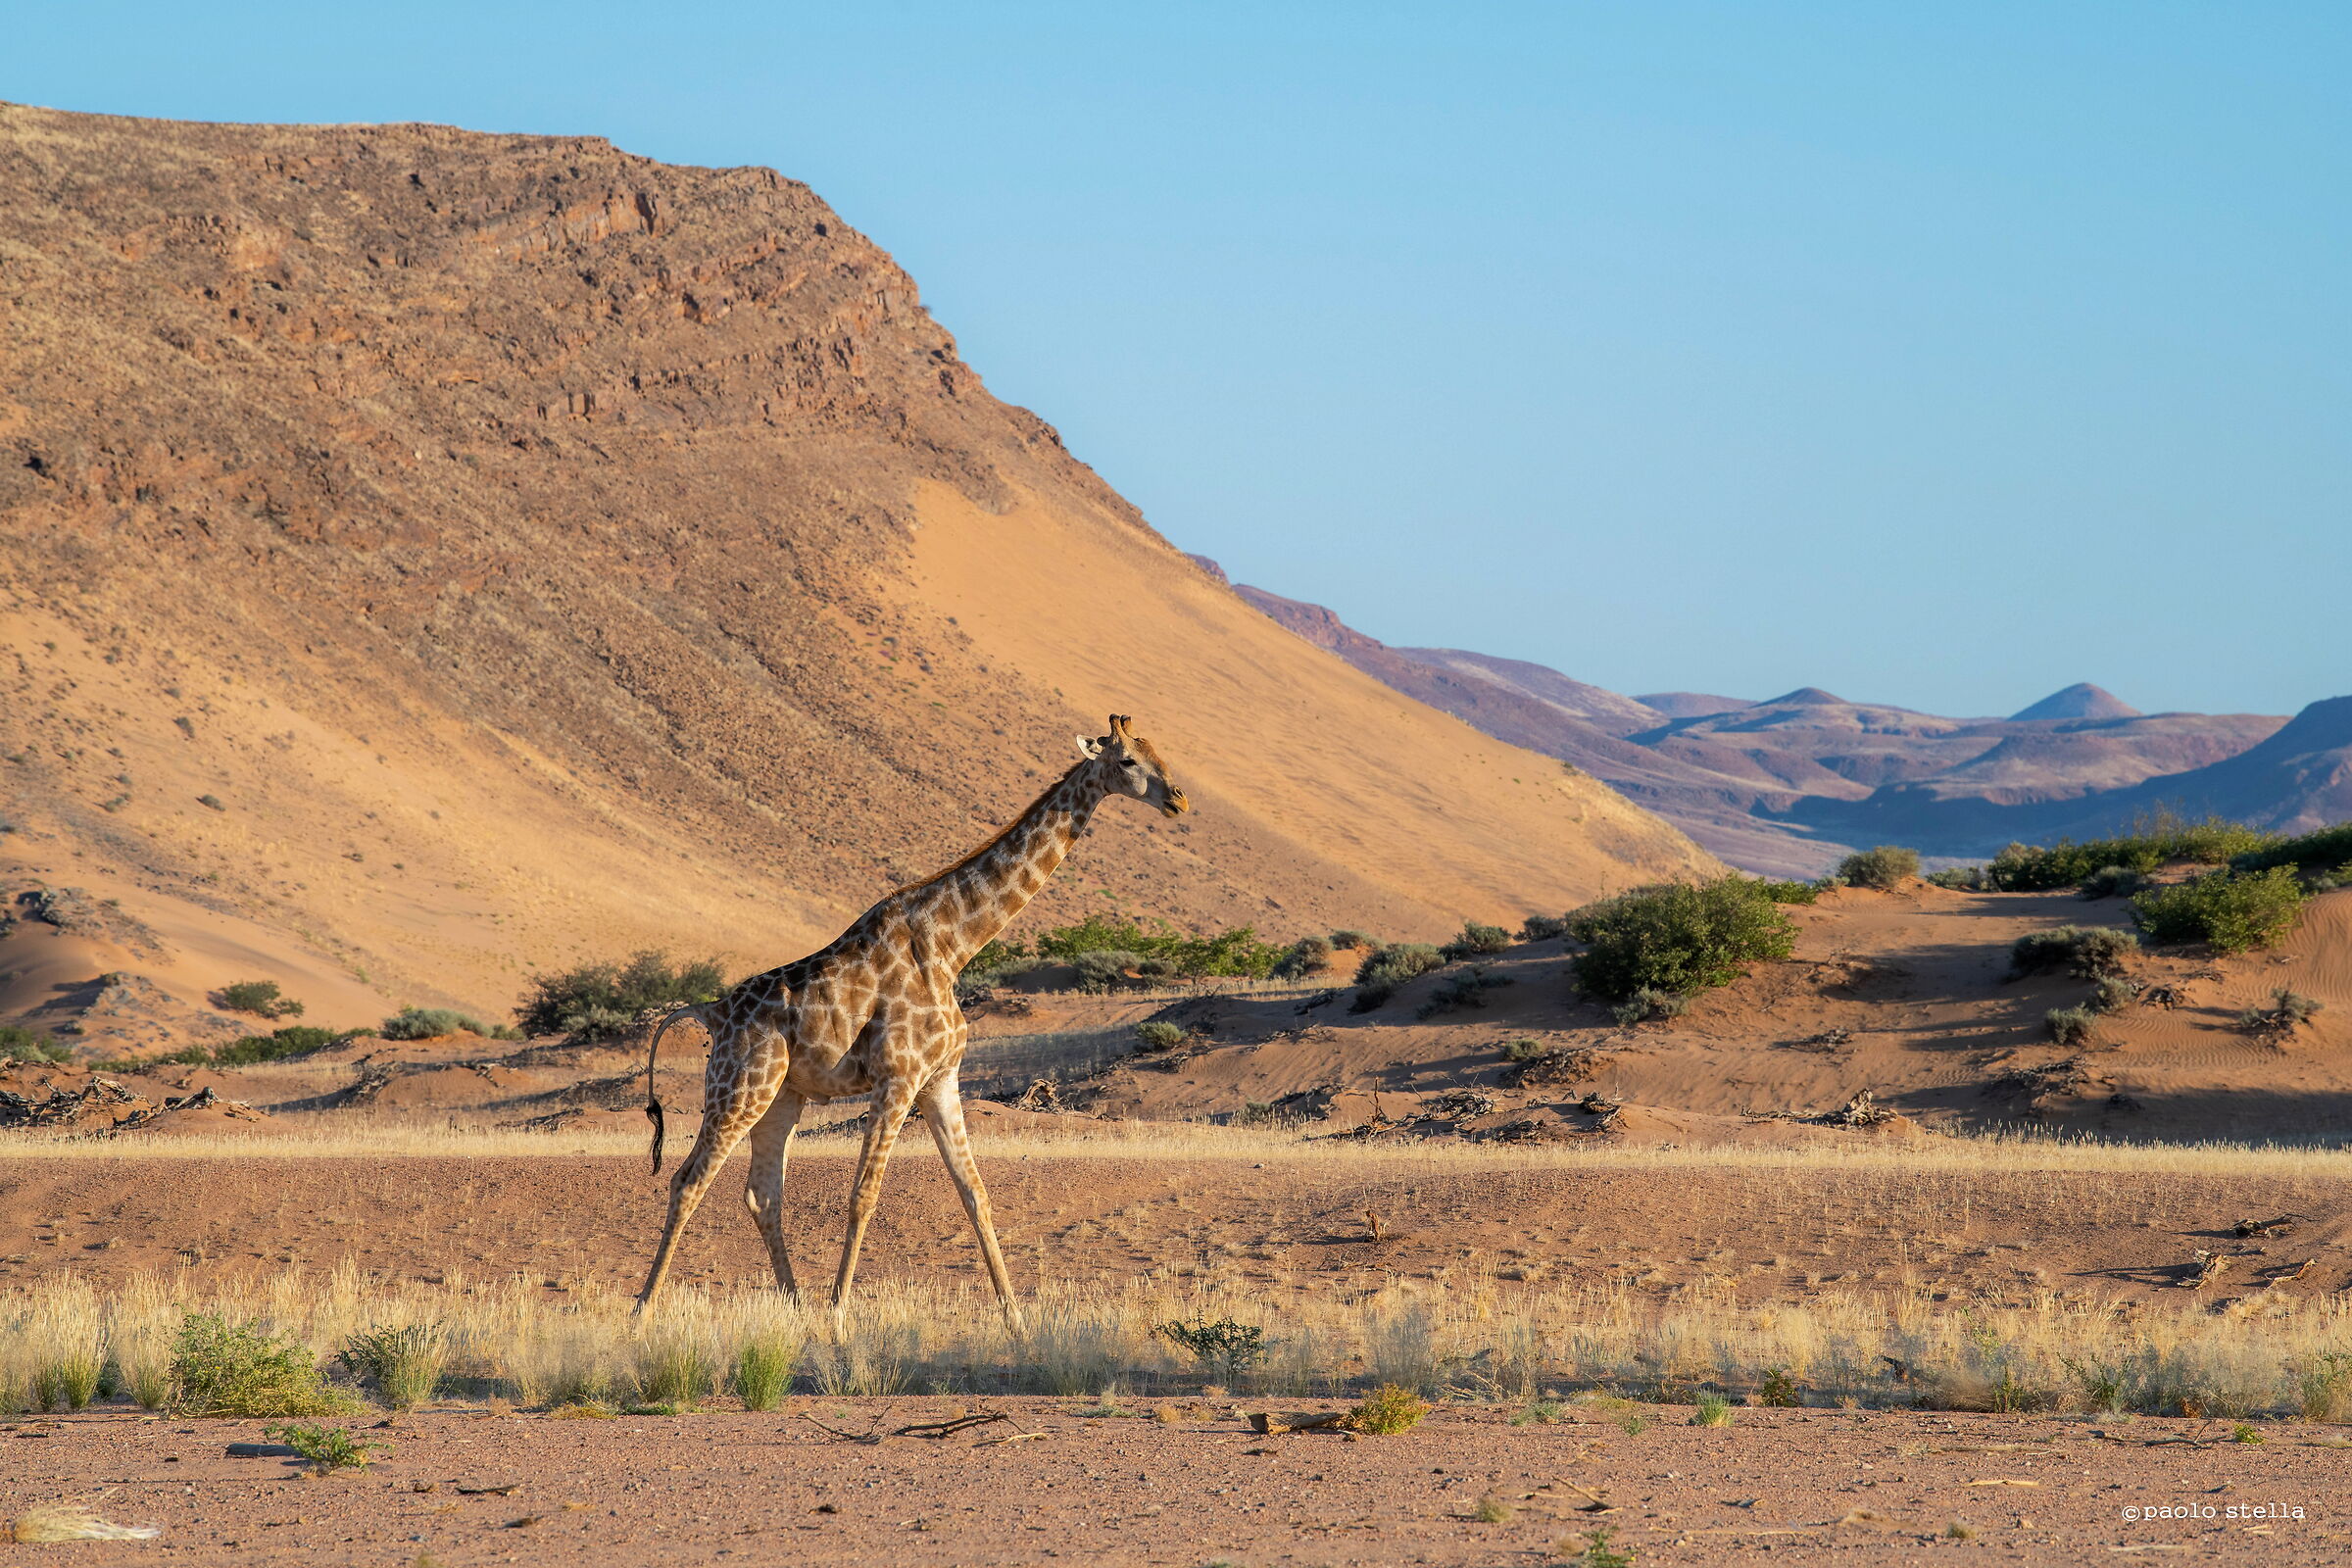 giraffe in the desert...